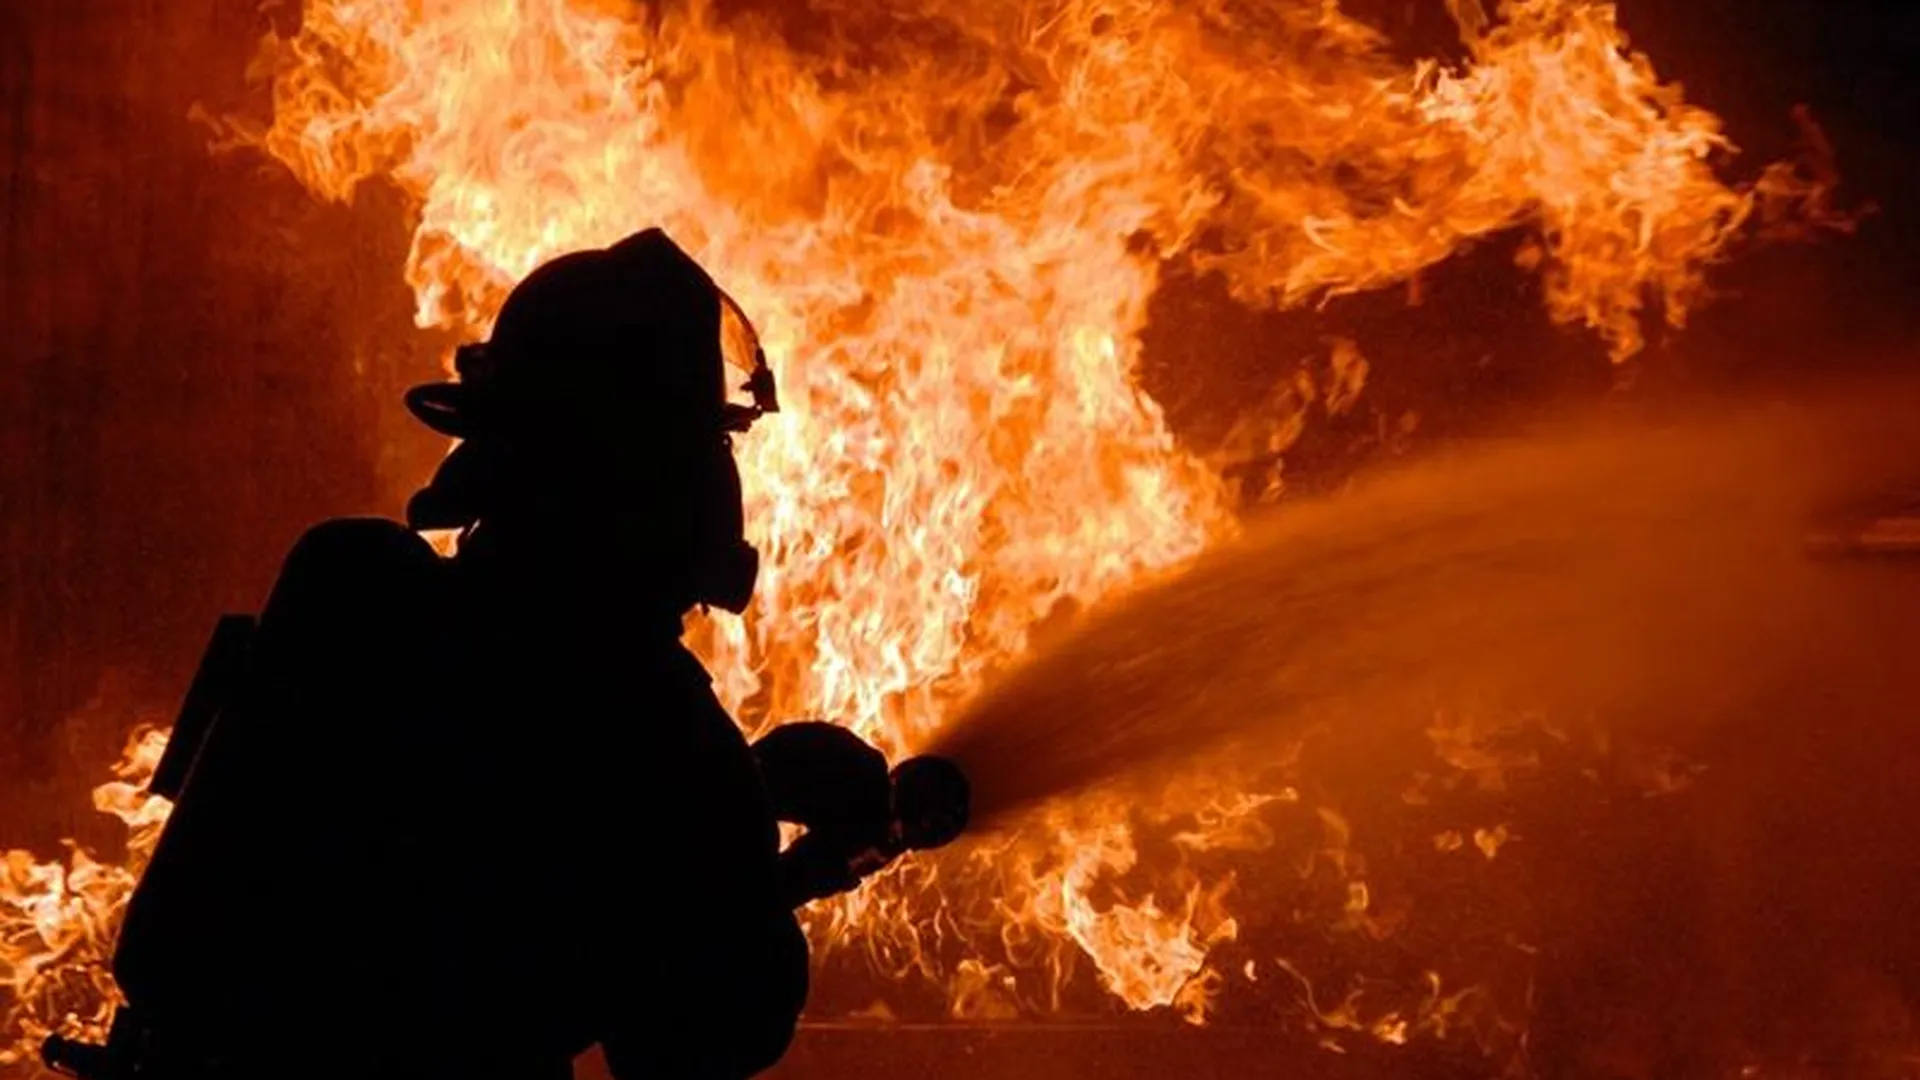 Выживший при пожаре мальчик потерял семью в Старой Купавне